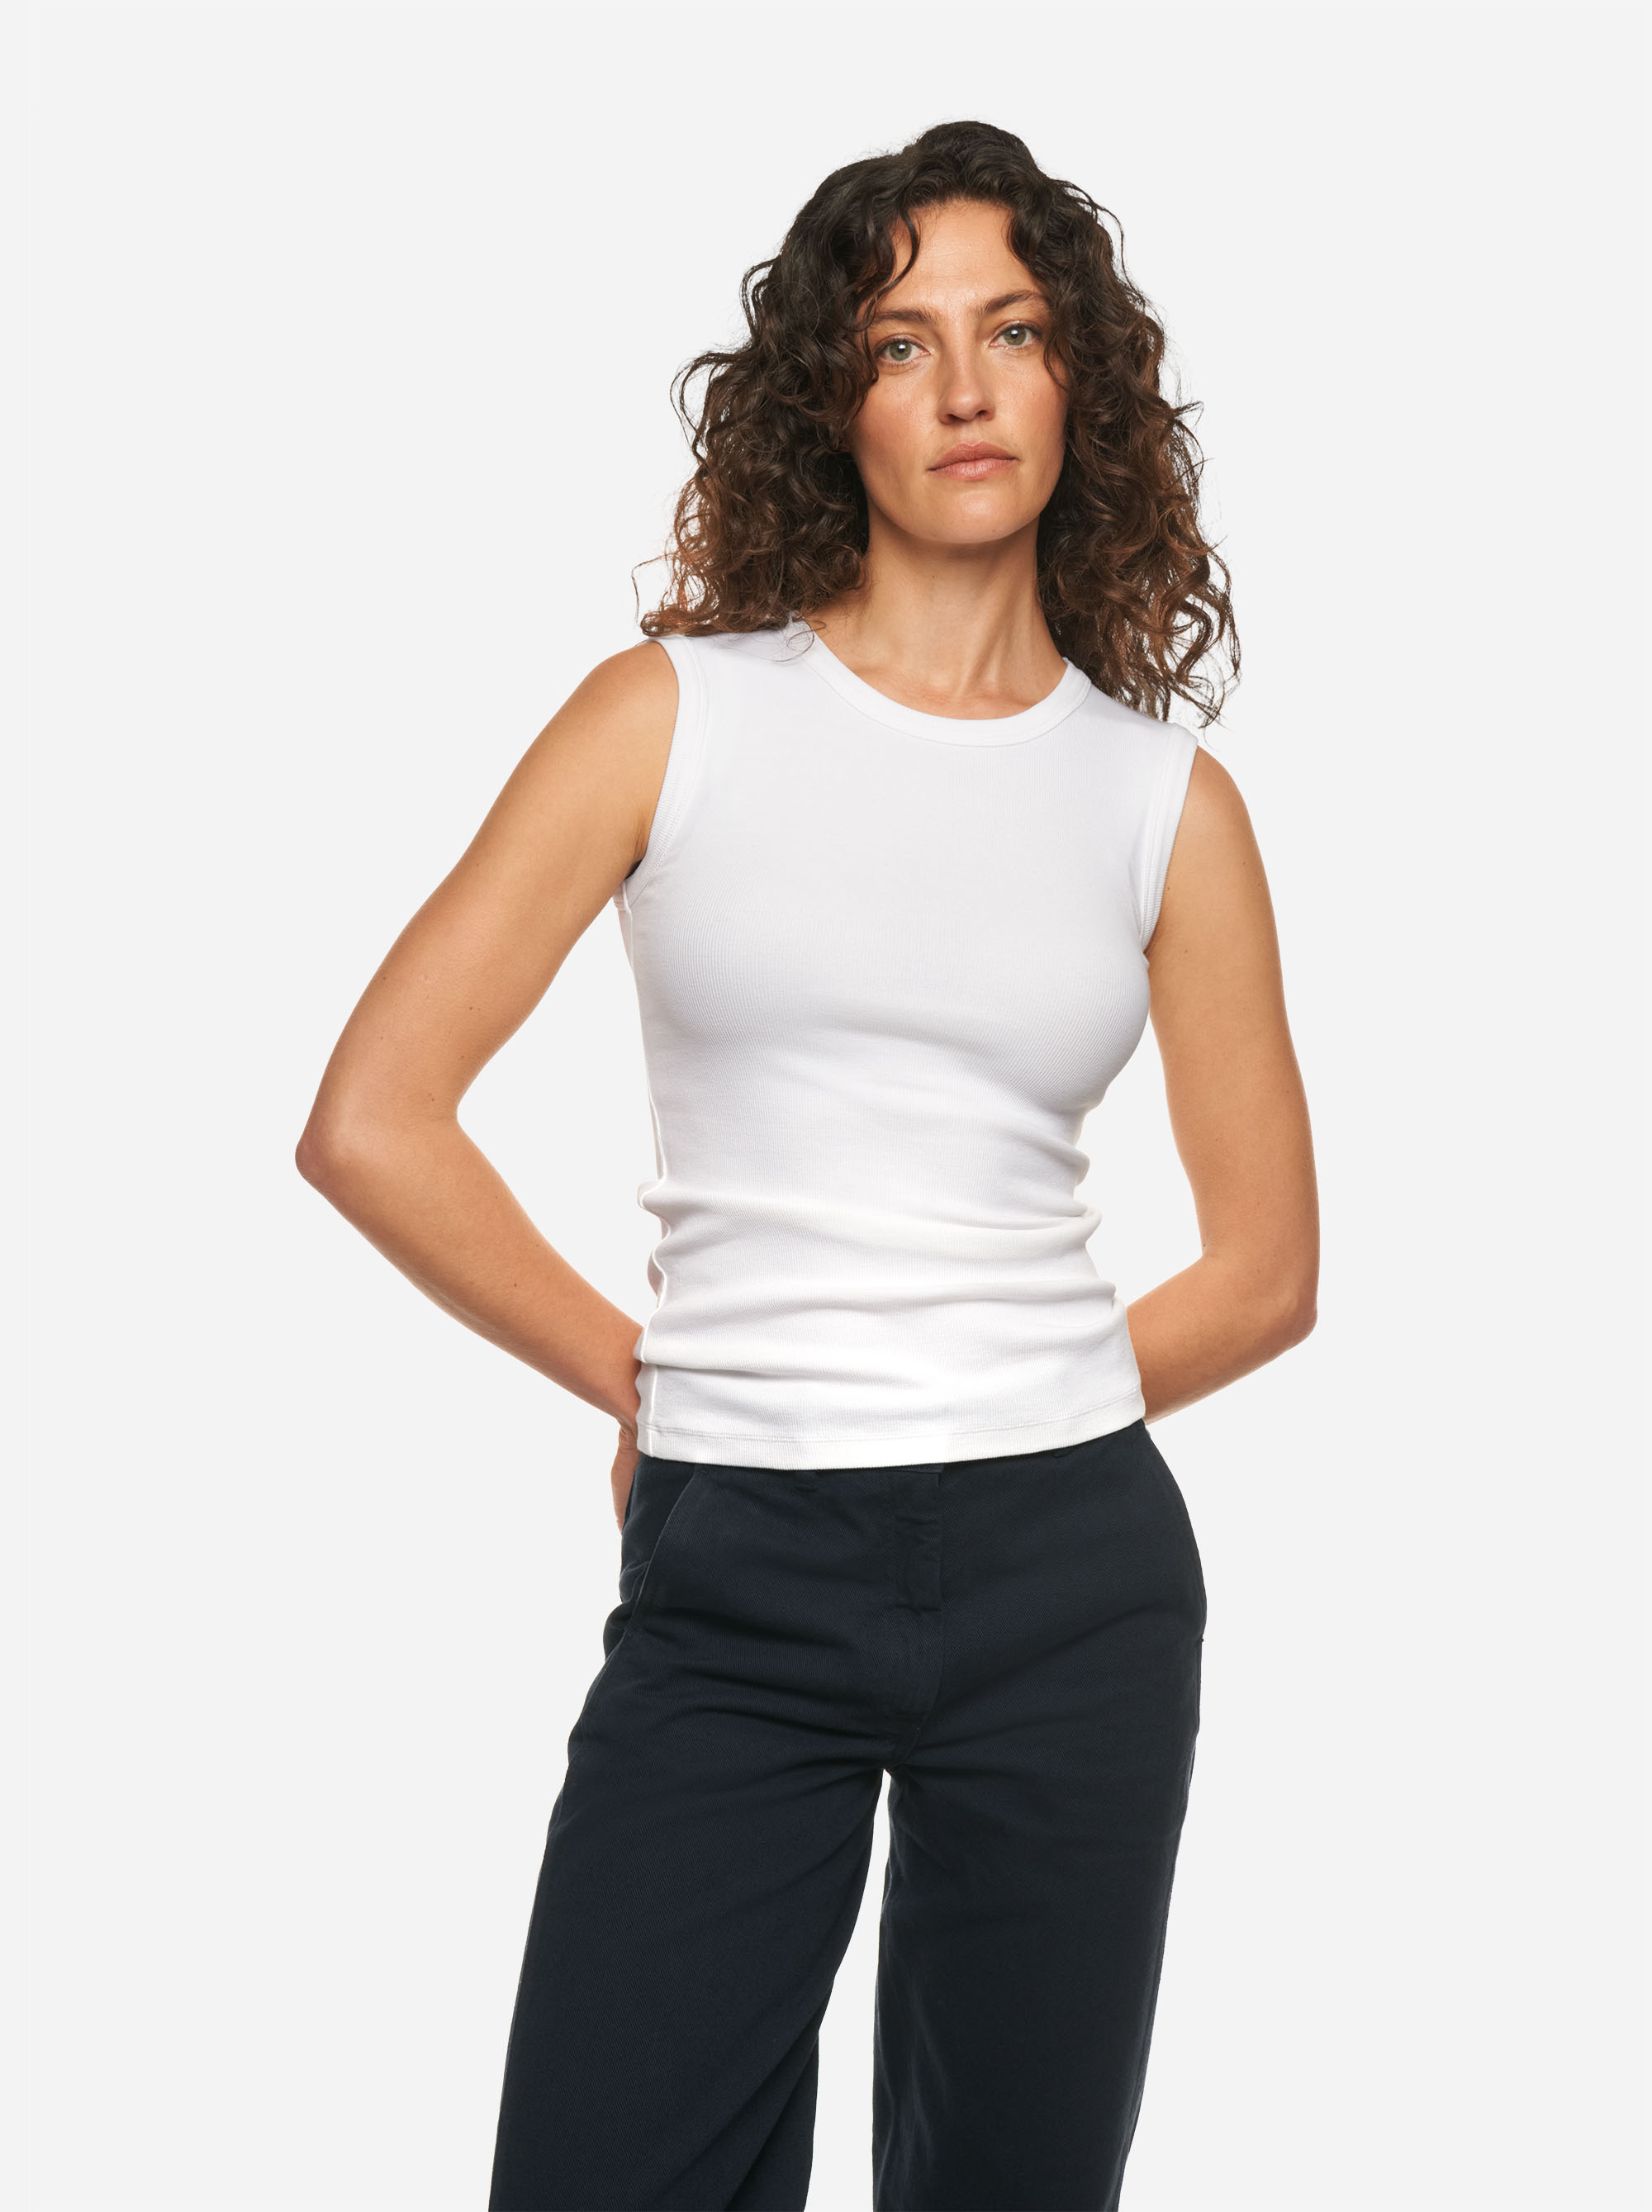 Teym - The Sleeveless T-Shirt - Women - White - 5